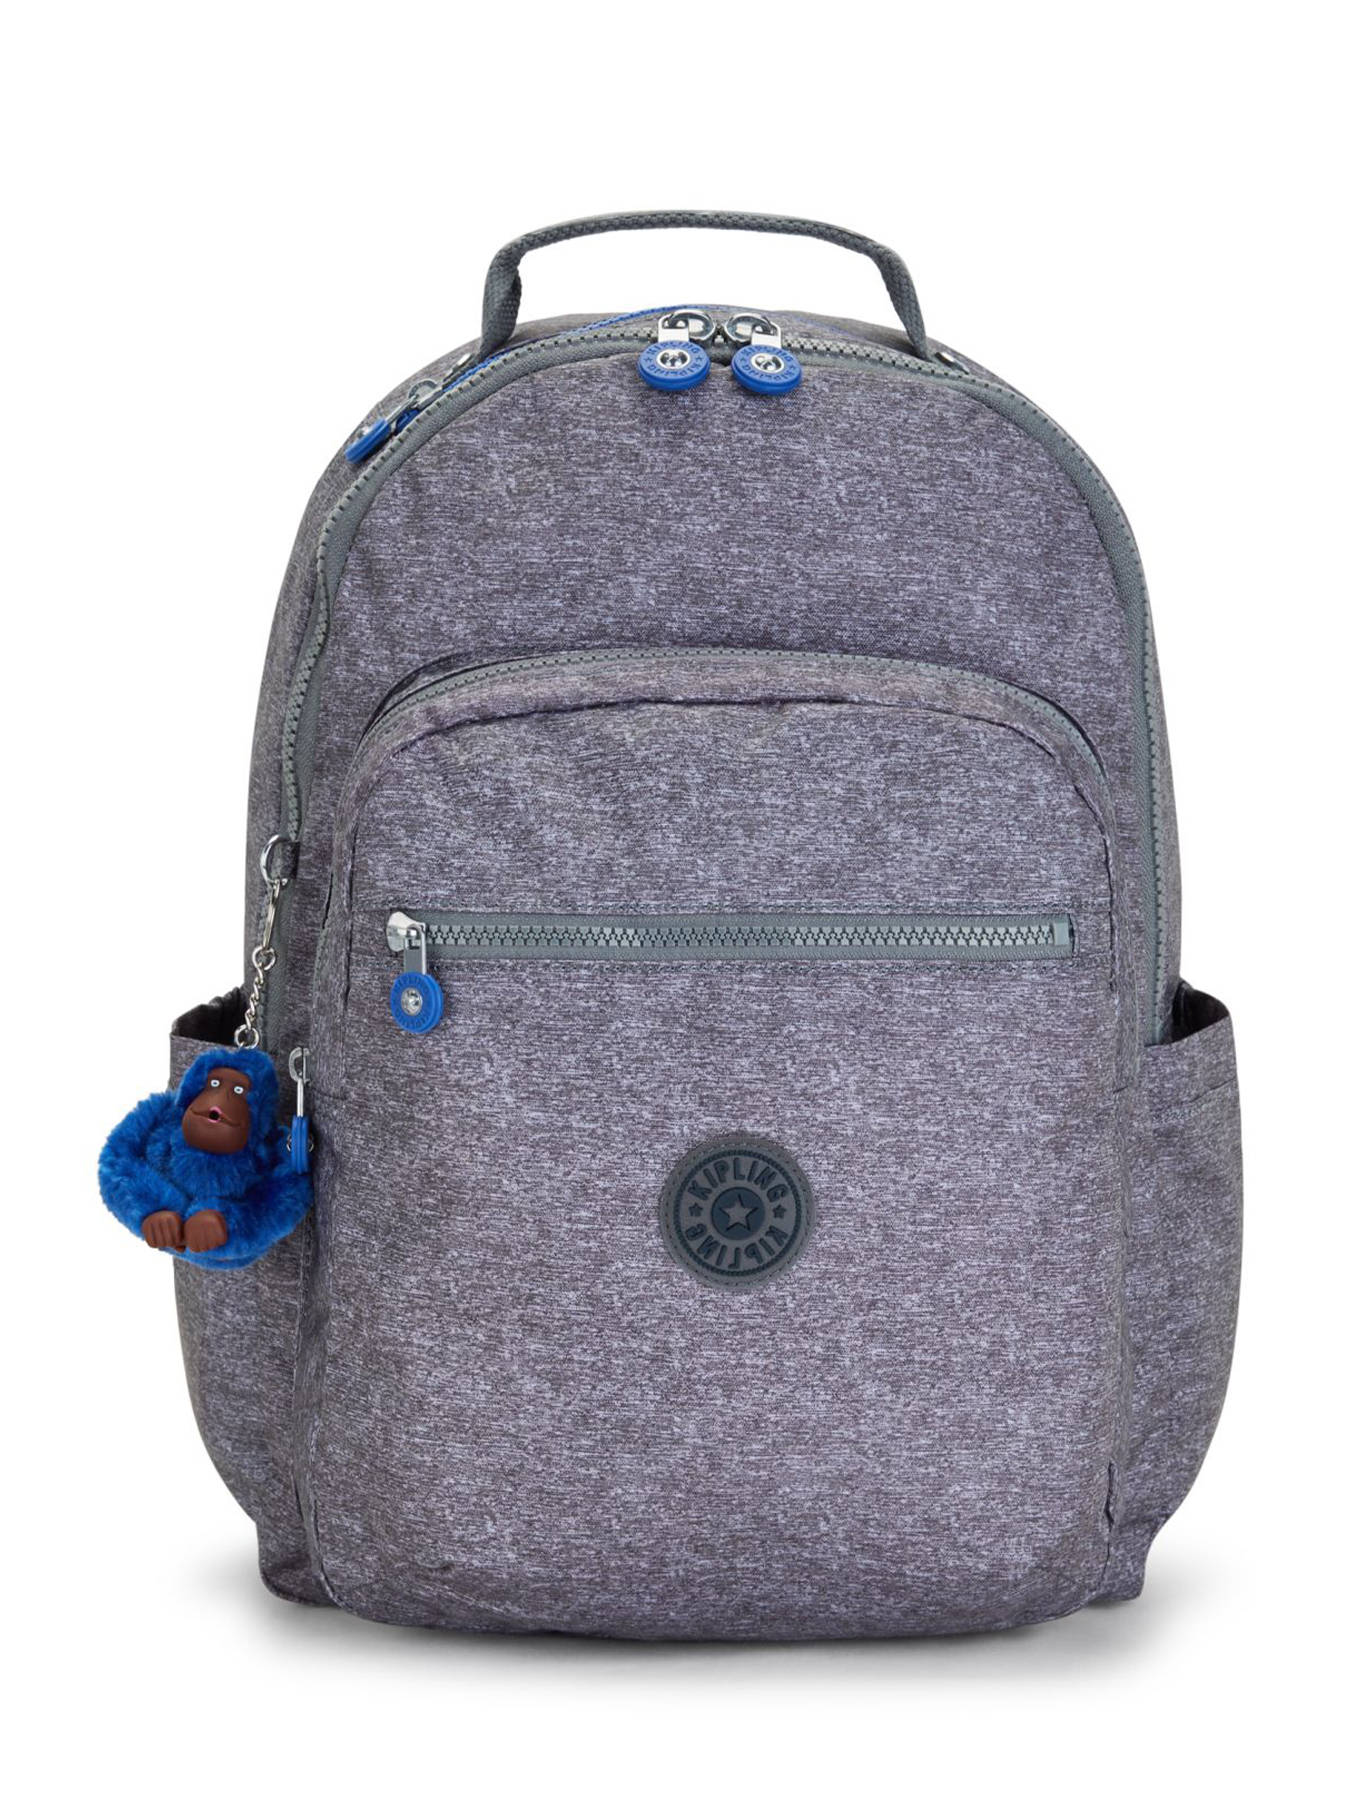 Sohi Laptop Backpack - Smoke Casual | Kipling